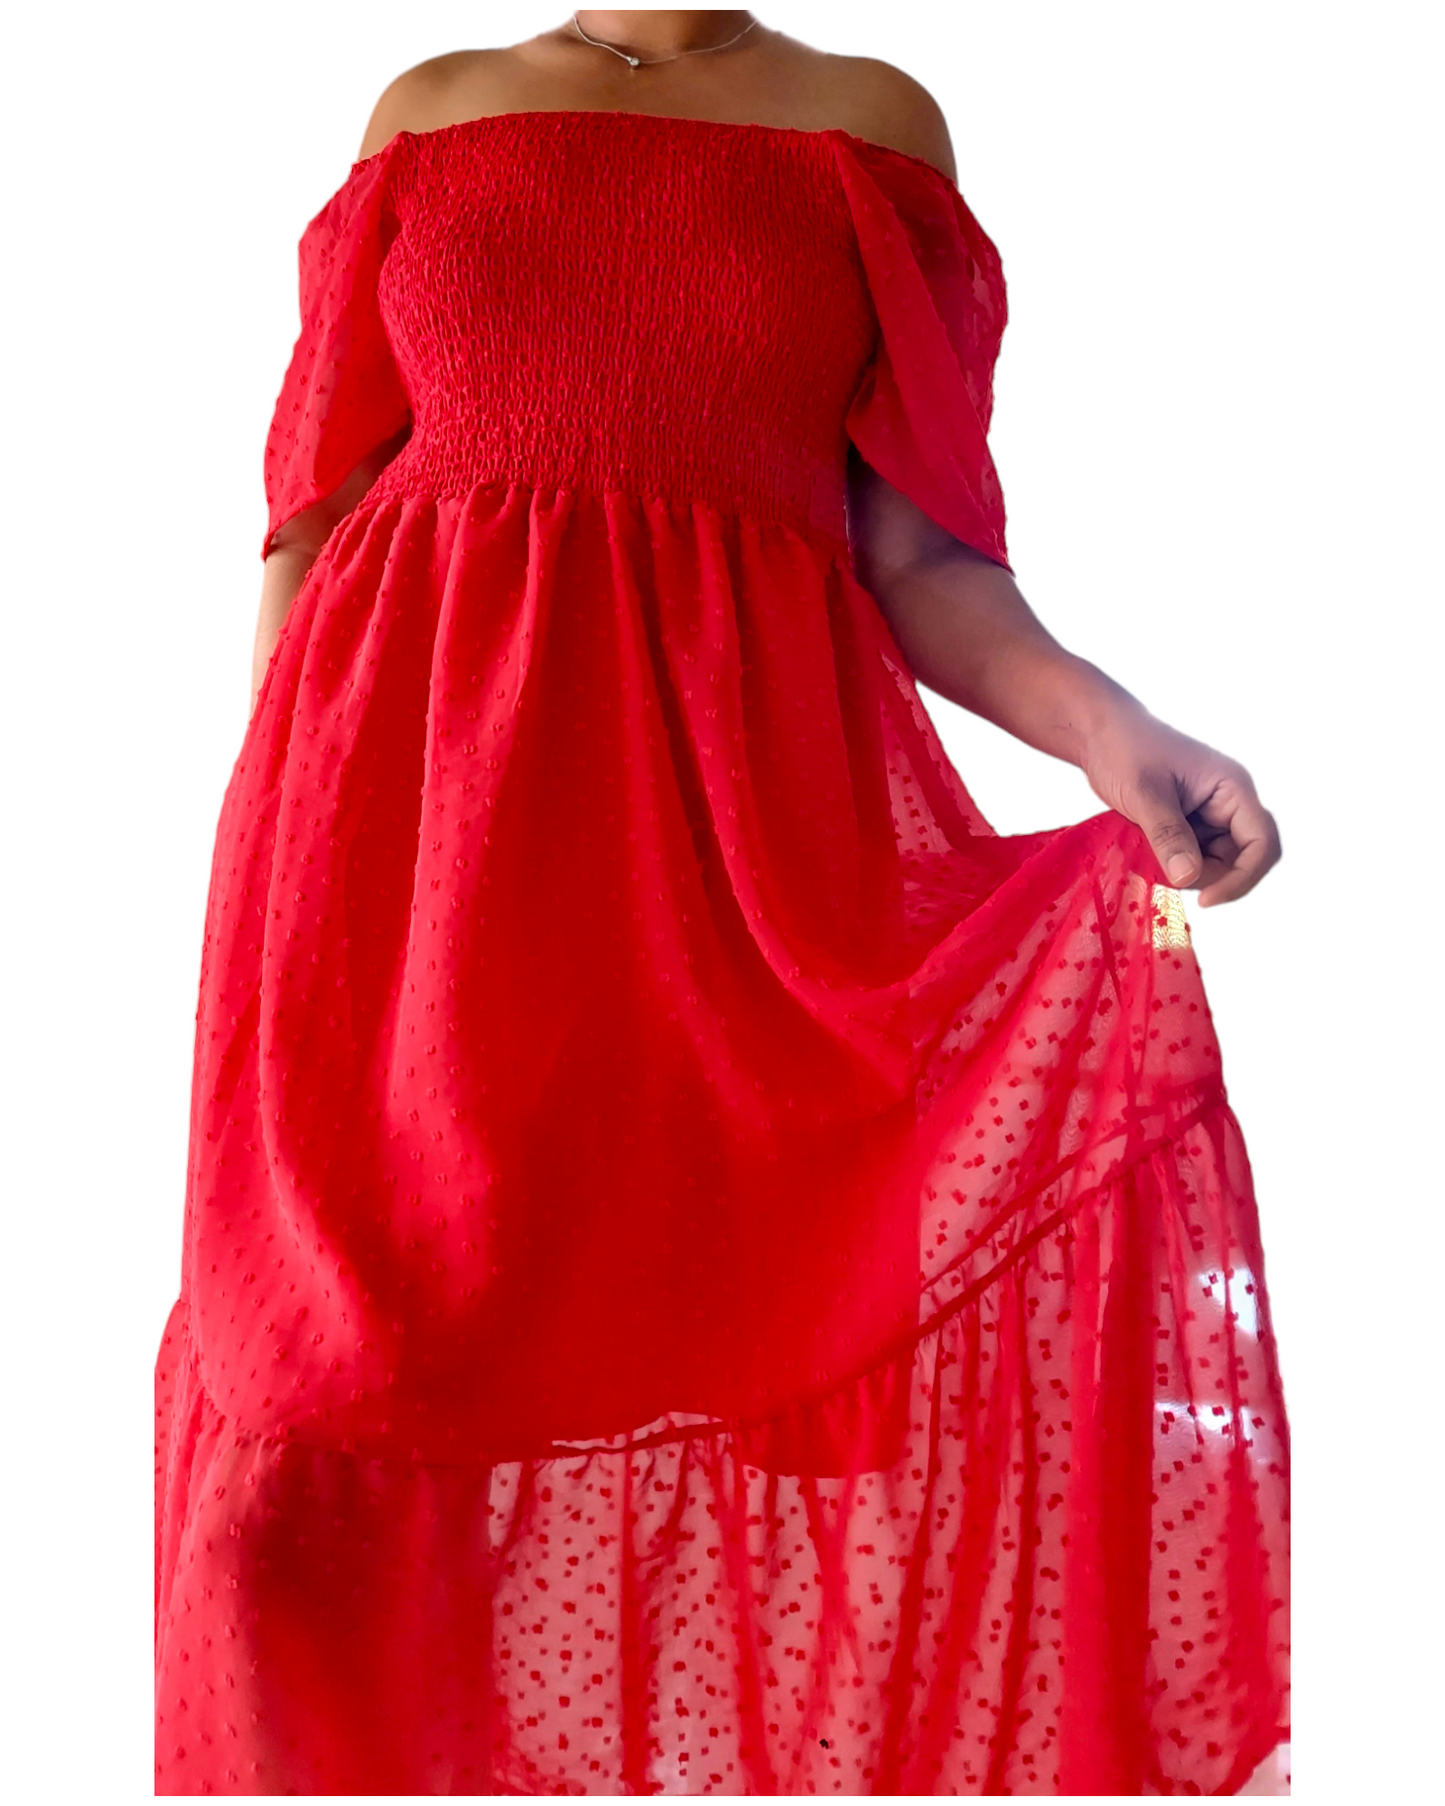 Women Tube Dress - 4123 Red